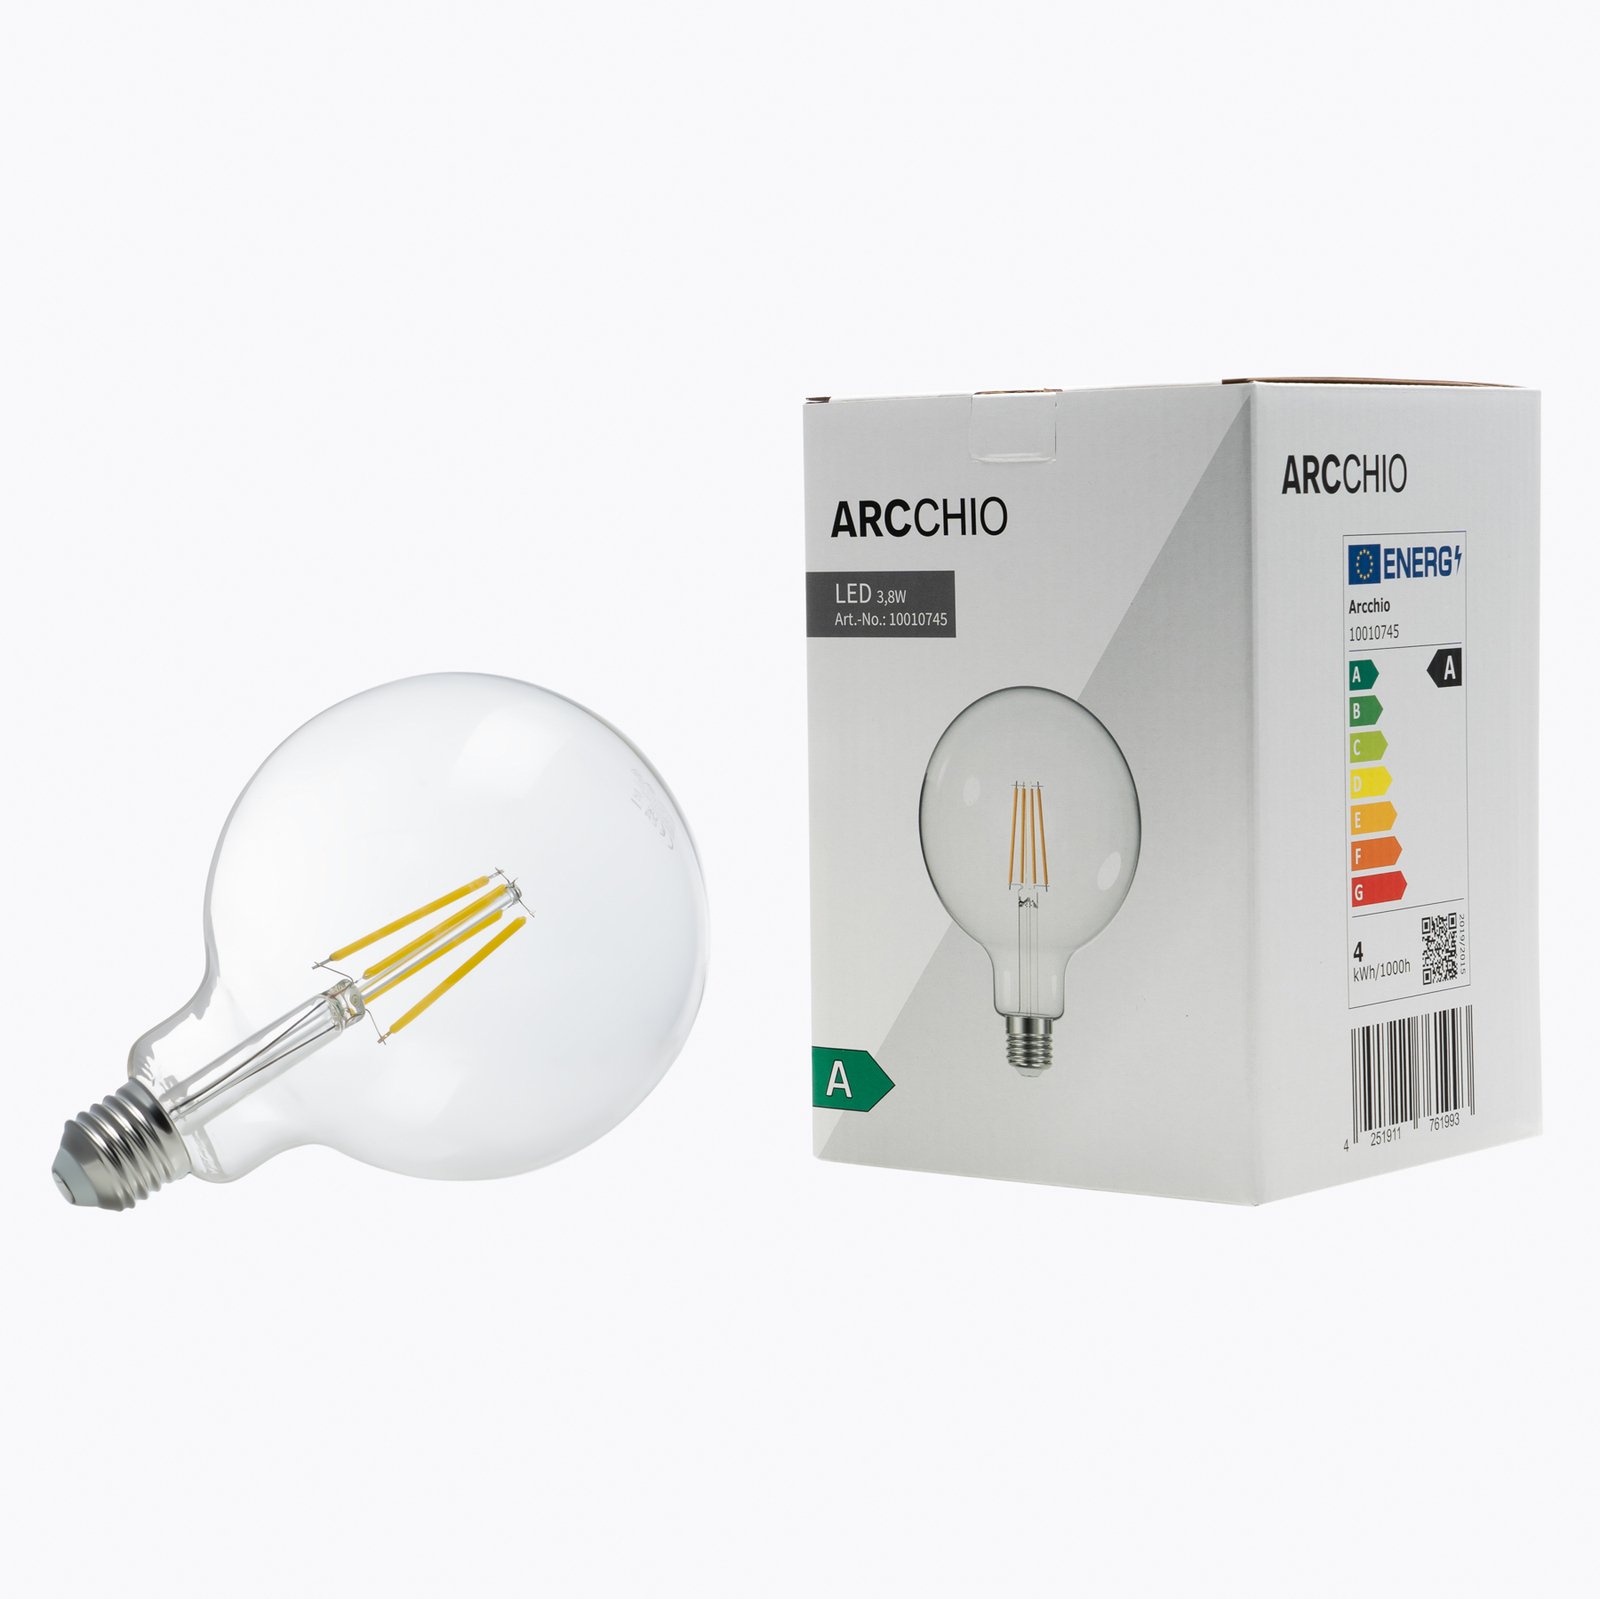 Arcchio LED bollamp G125 E27 3,8W 2700K 806lm